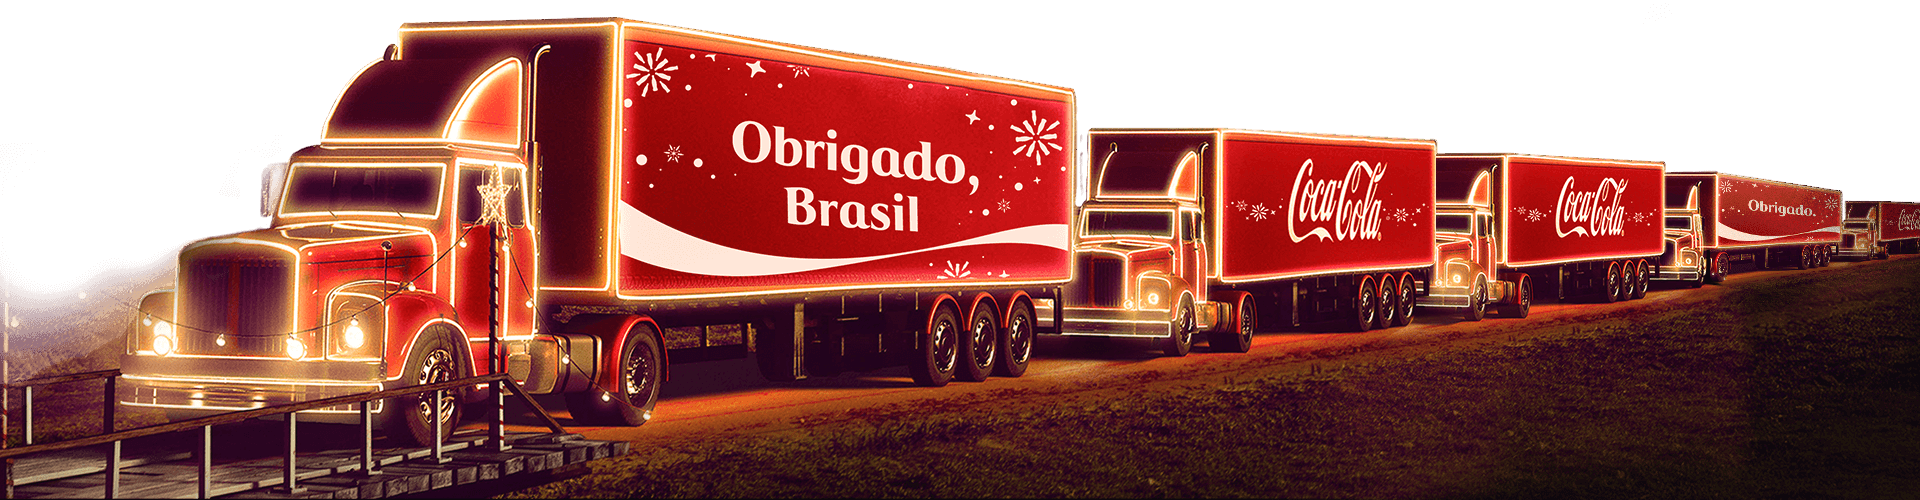 Caminhão de Natal da Coca-Cola inicia caravana em cidades capixabas